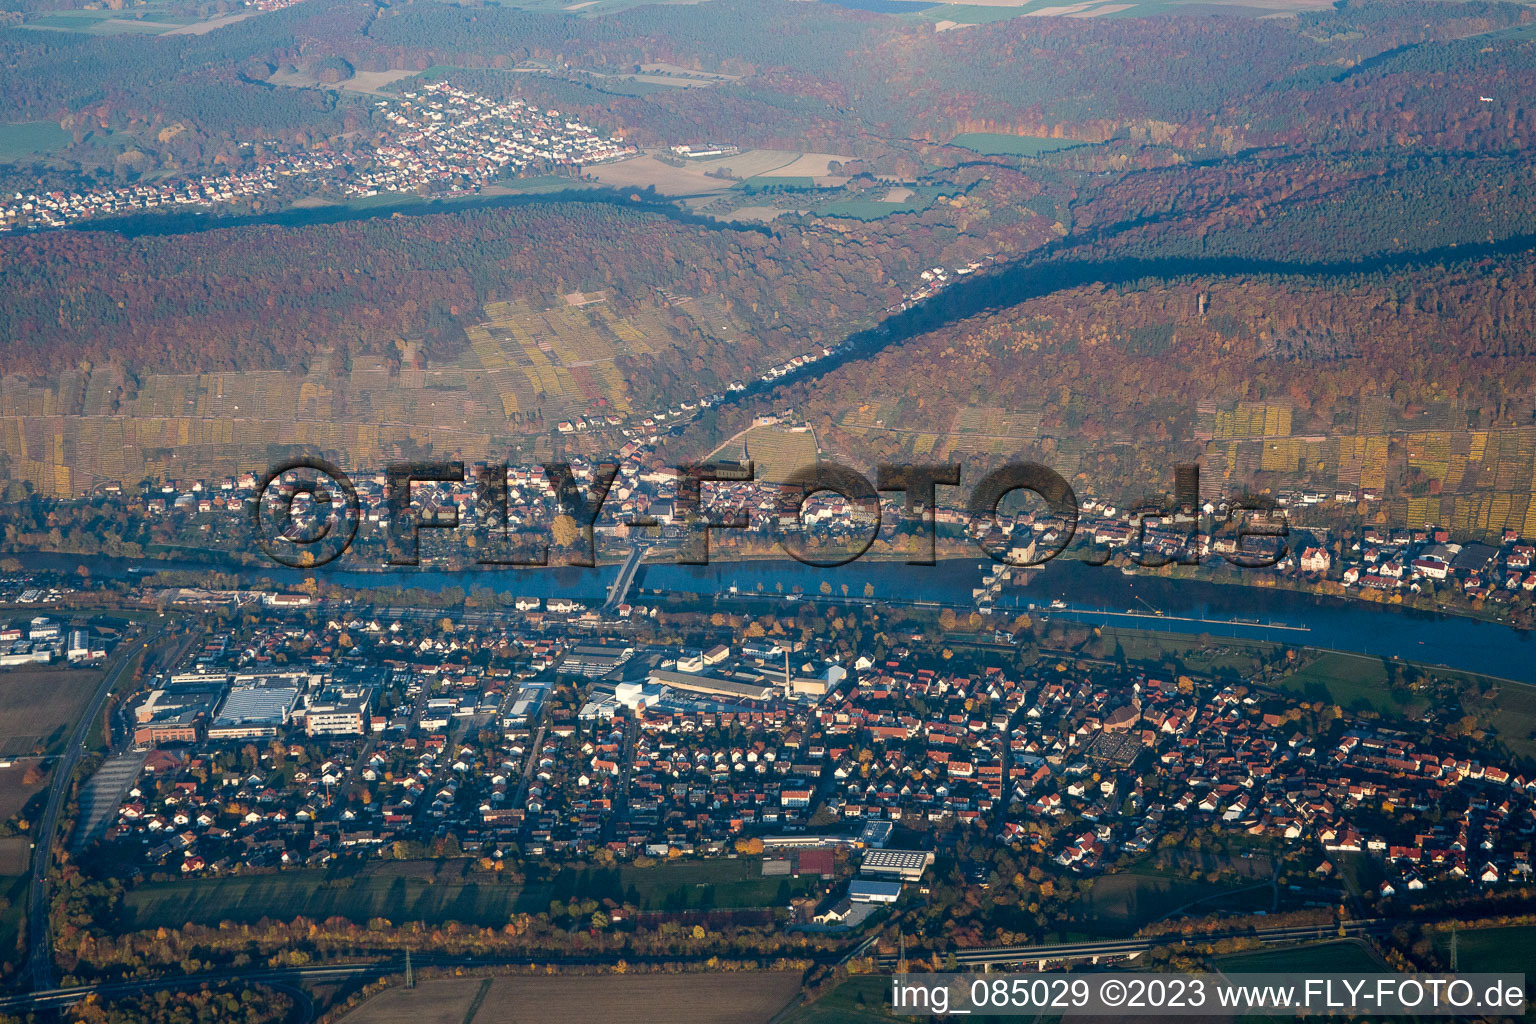 Luftbild von Klingenberg in Klingenberg am Main im Bundesland Bayern, Deutschland